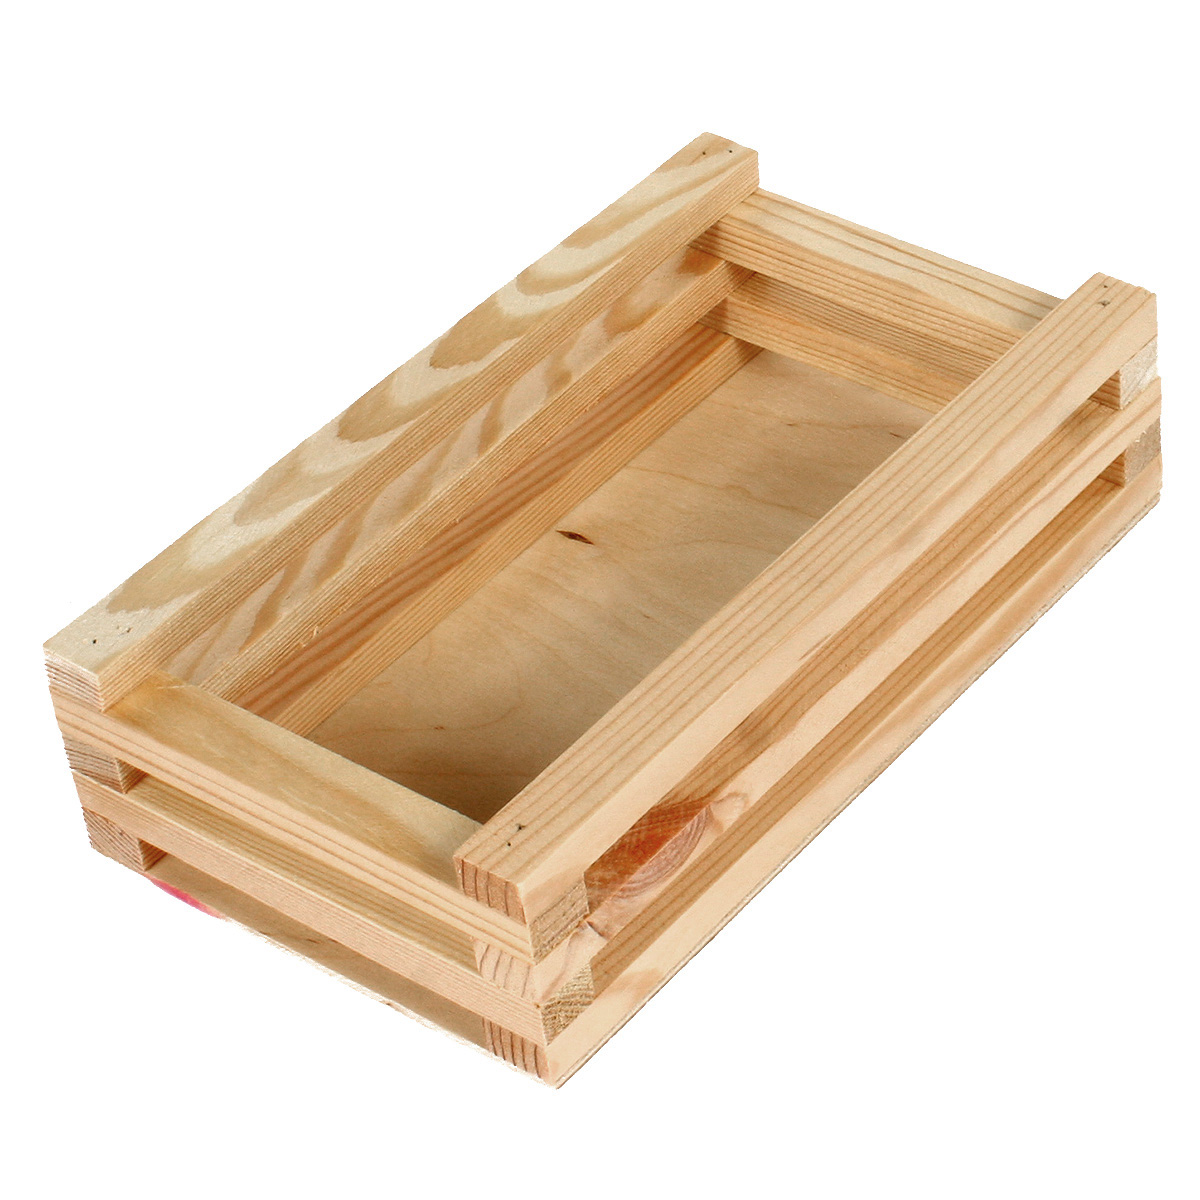 Коробка деревянная Grand Gift 136 прямоугольная из брусков 26х15х6 см подарочная коробка с отделением для сладостей подарочных наборов цветочных композиций